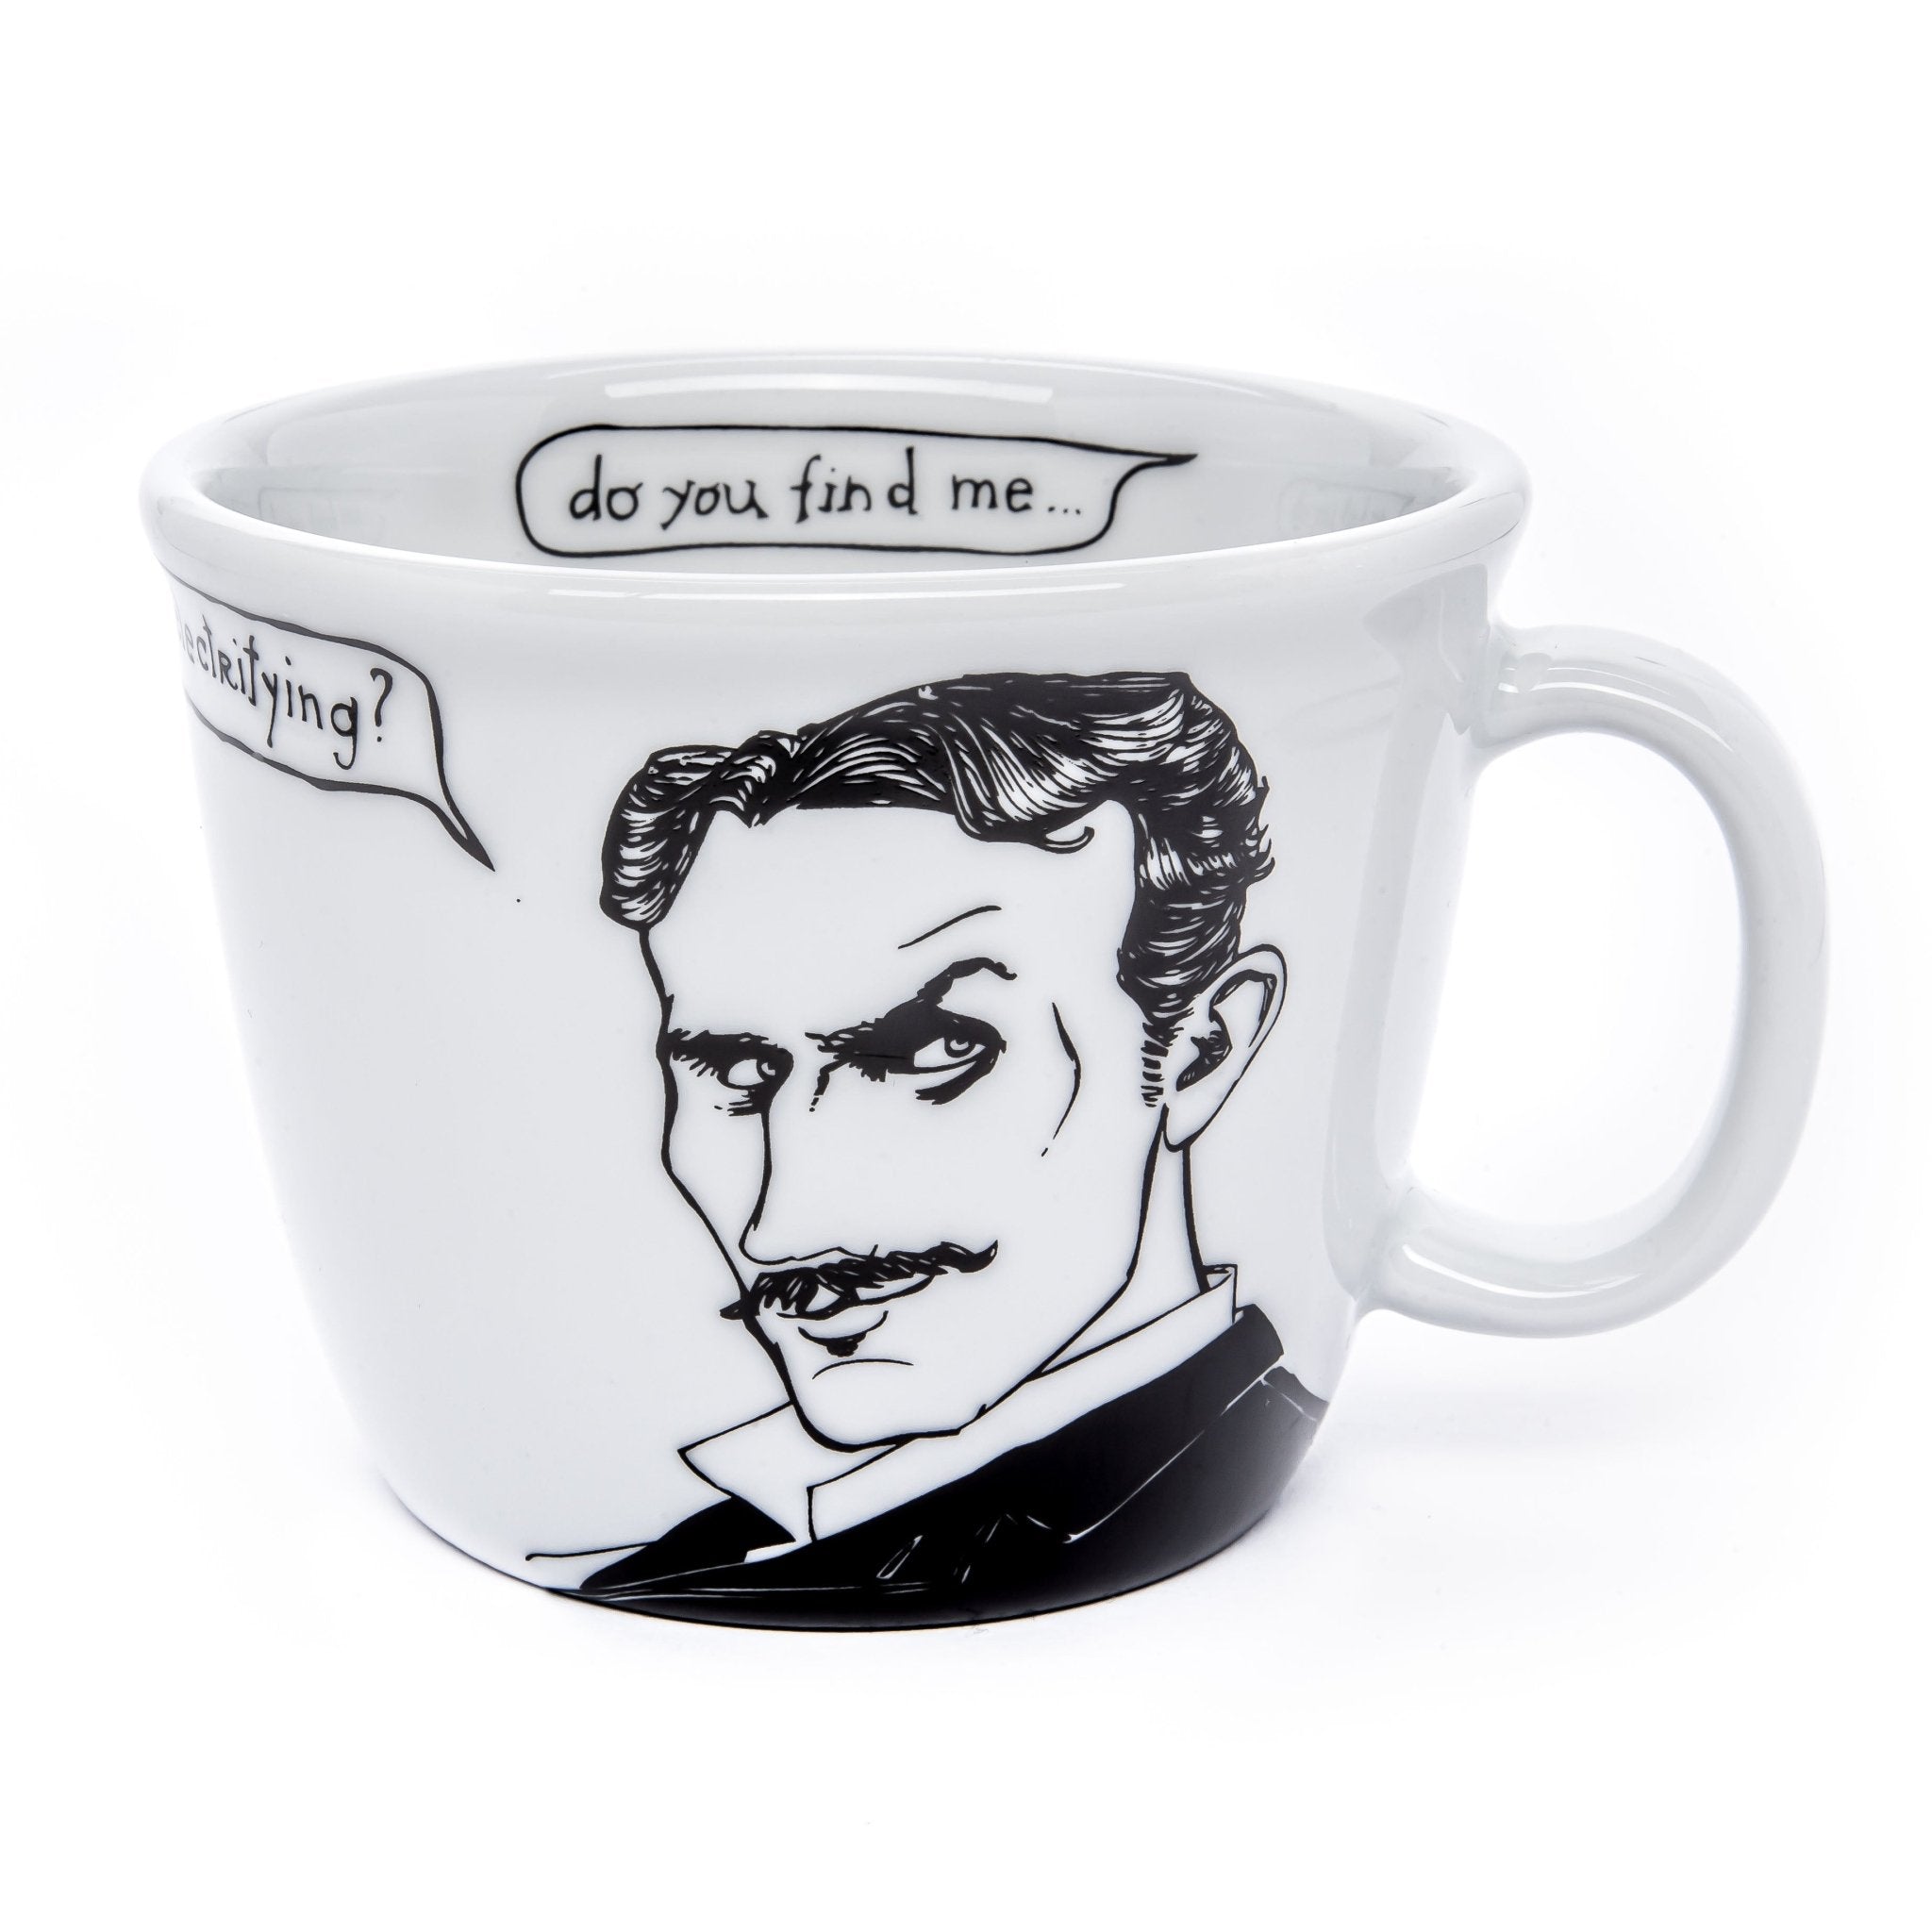 Porcelain cup inspired by Nikola Tesla